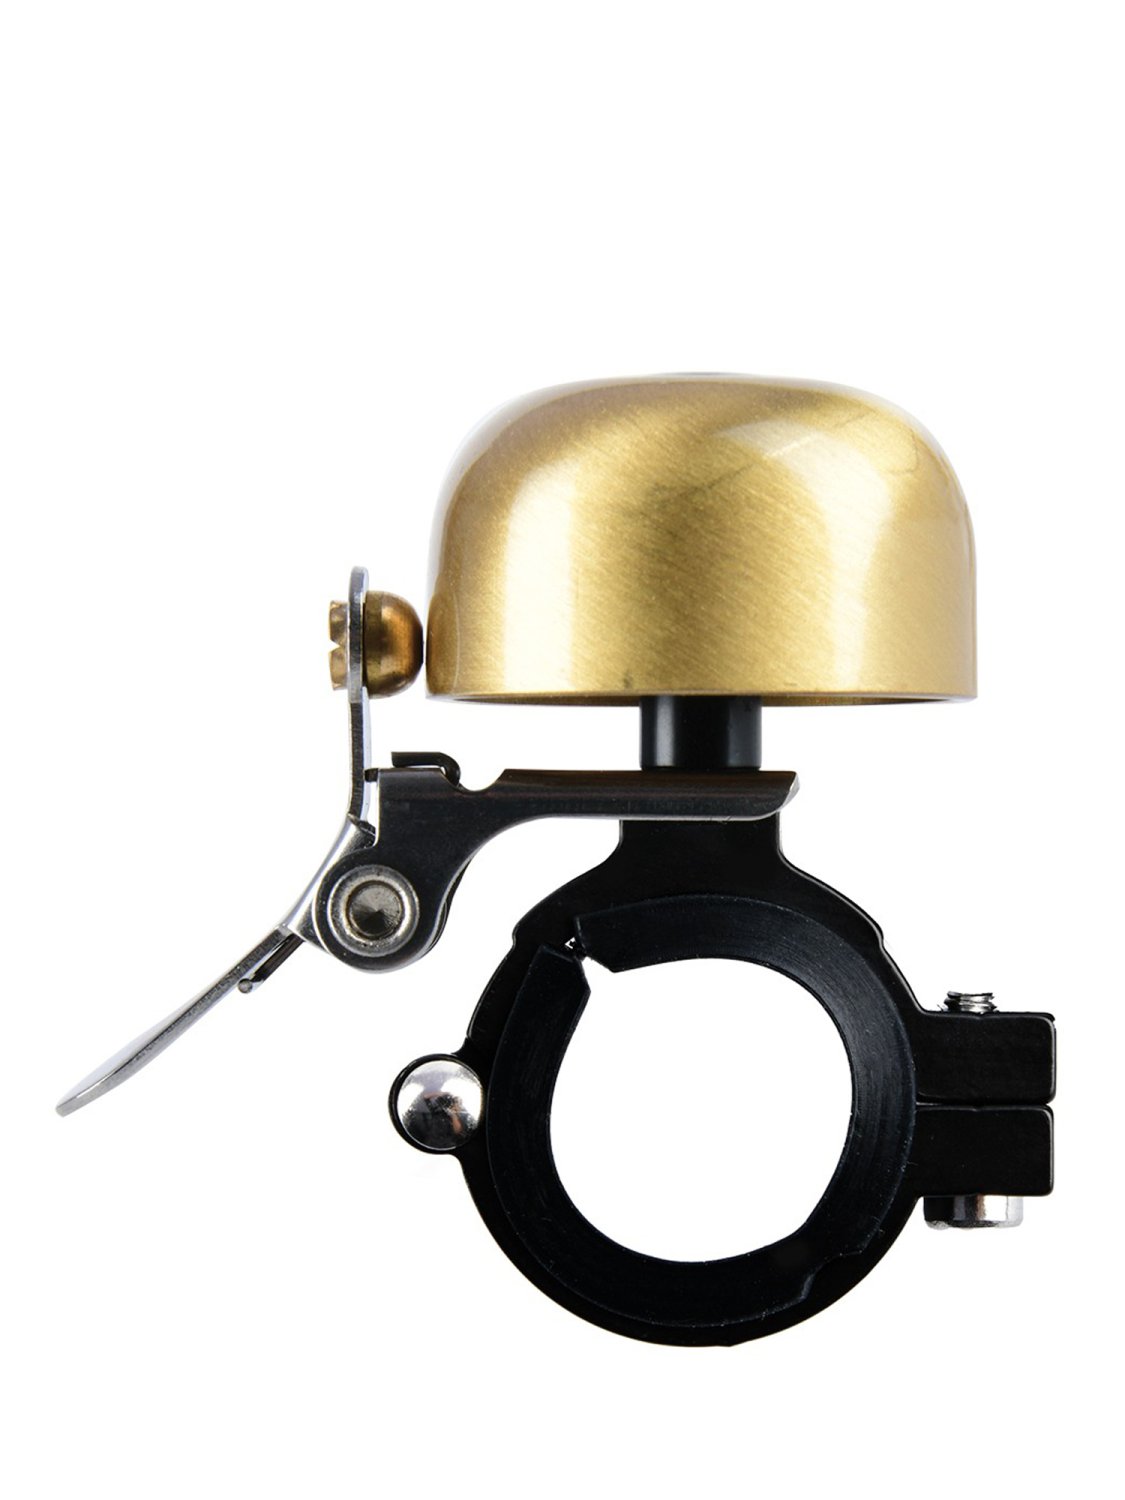 Звонок велосипедный Oxford Mini Ping Brass Bell Gold б/р, BE157G звонок велосипедный xlc mini bell retro dd m04 серый 2500701600